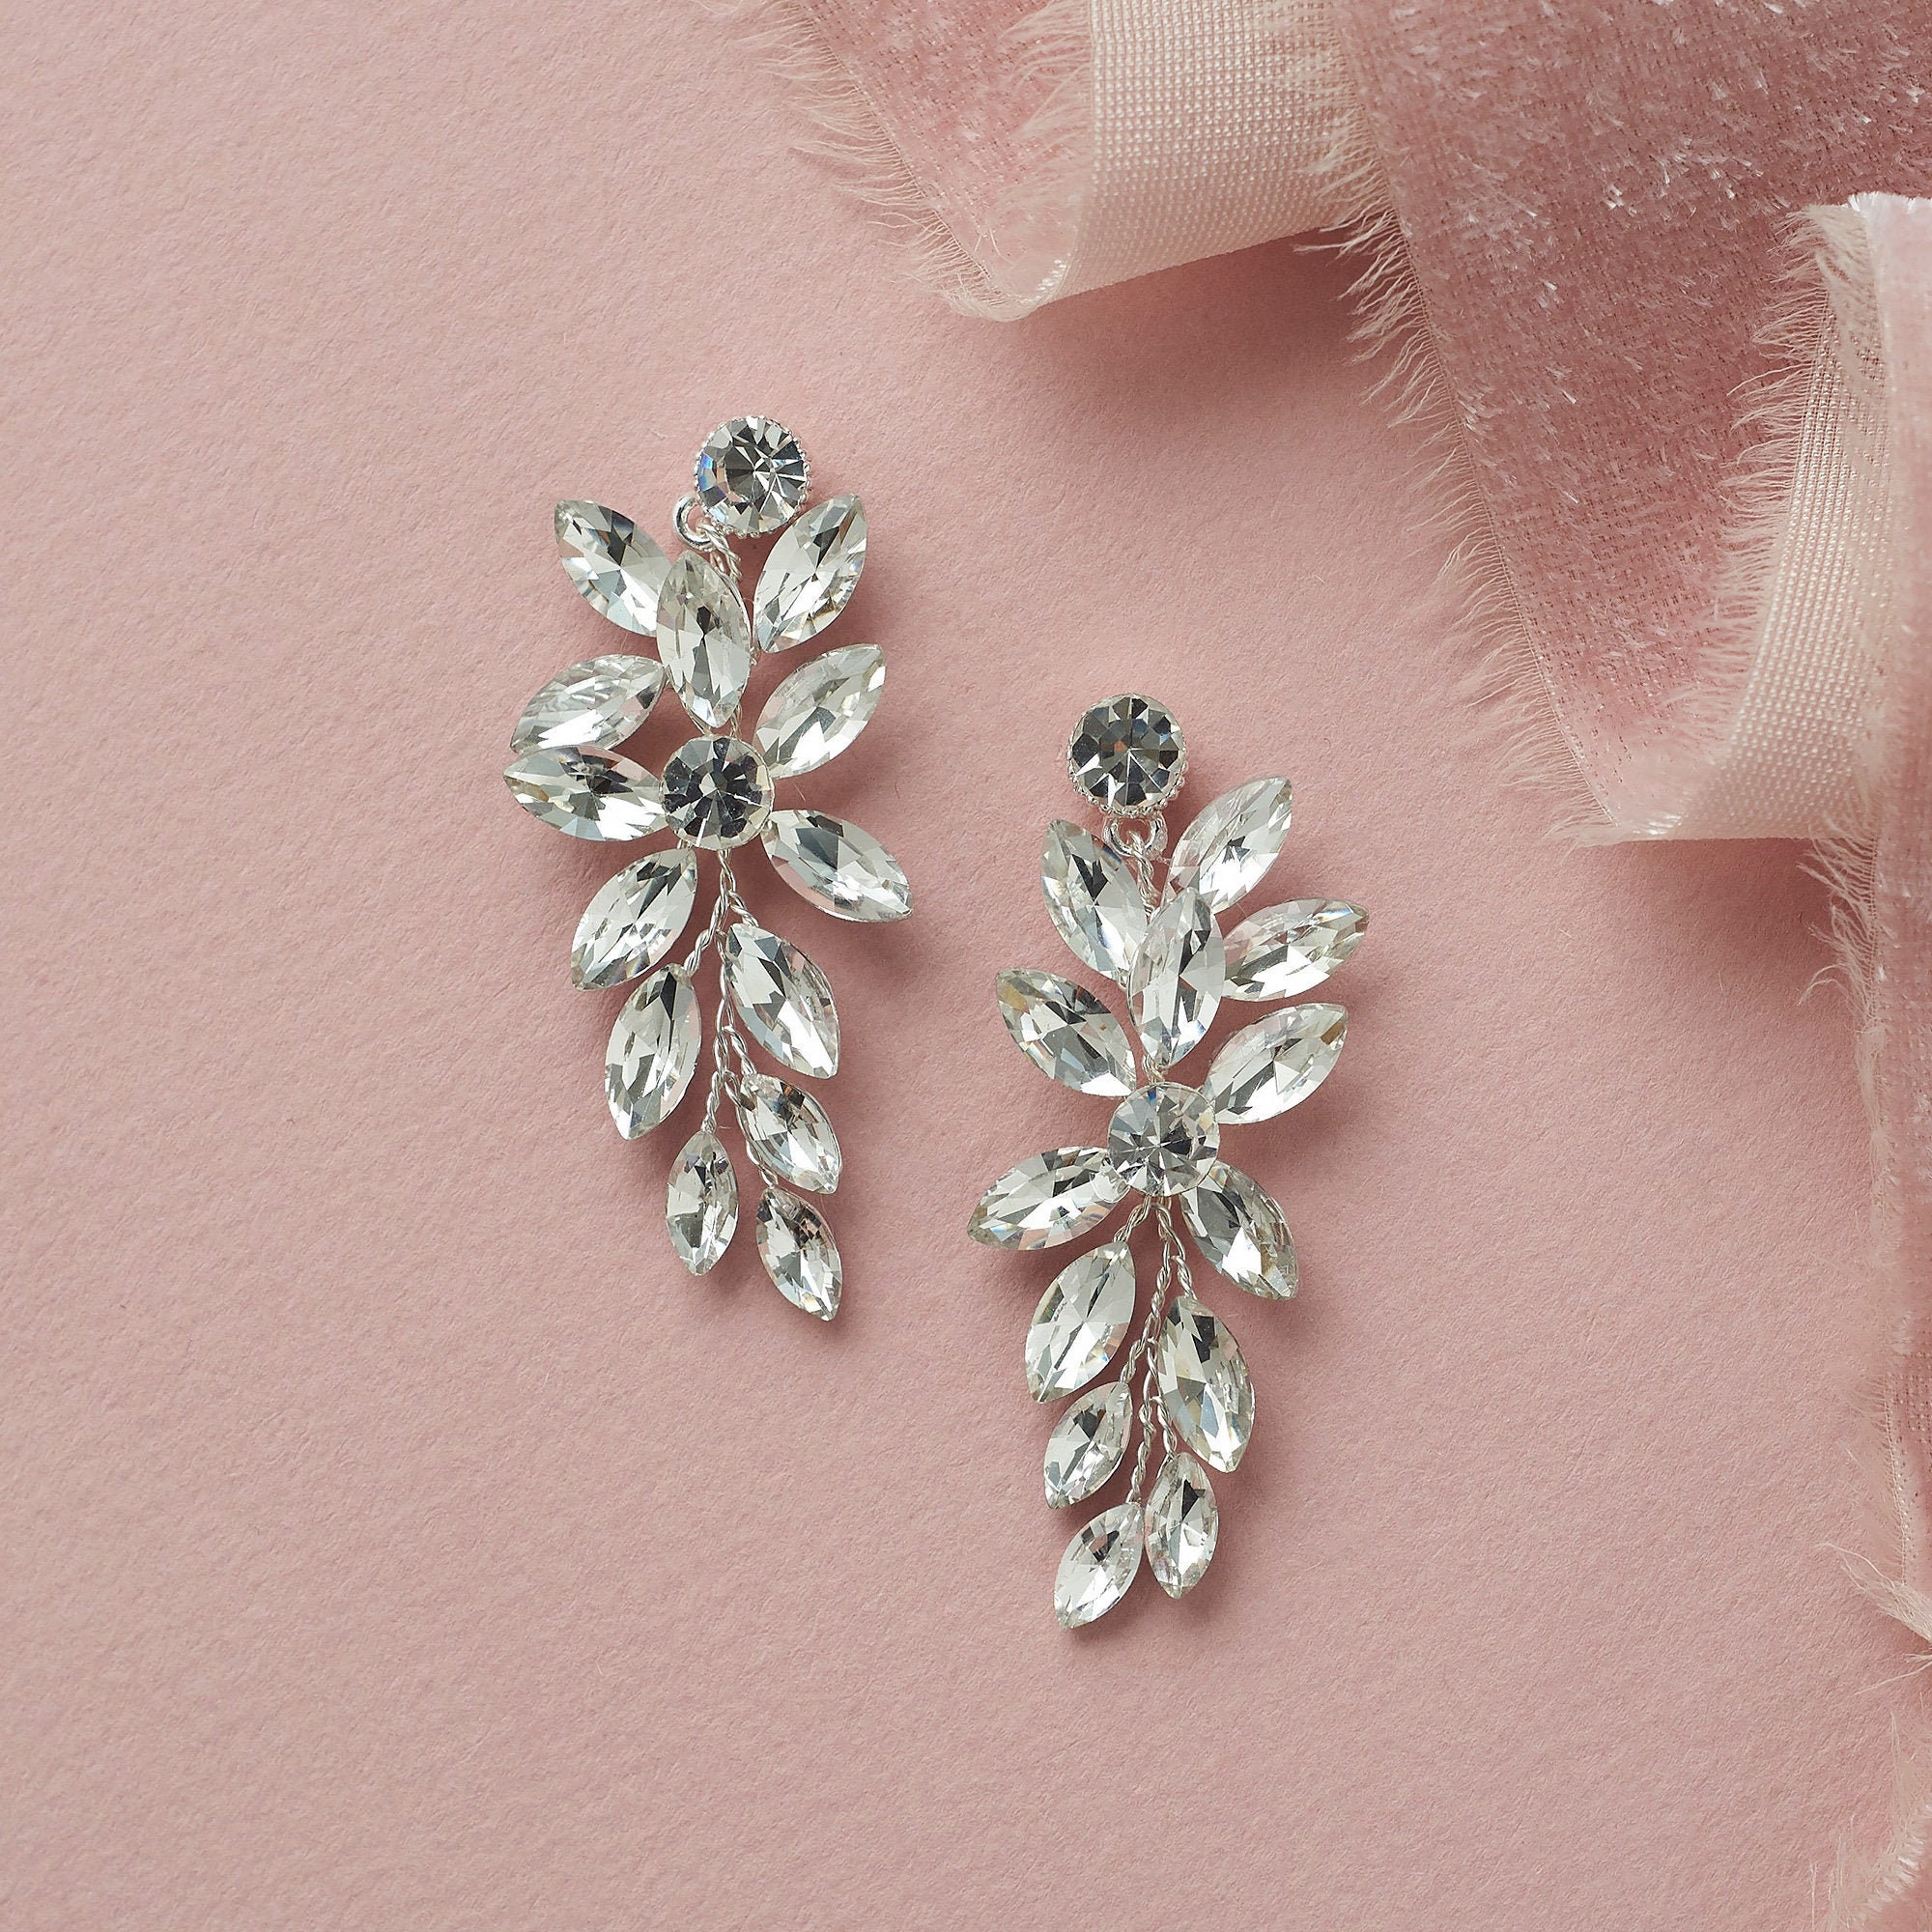 Floral Bridal Earrings Floral Crystal Wedding Earrings | Etsy